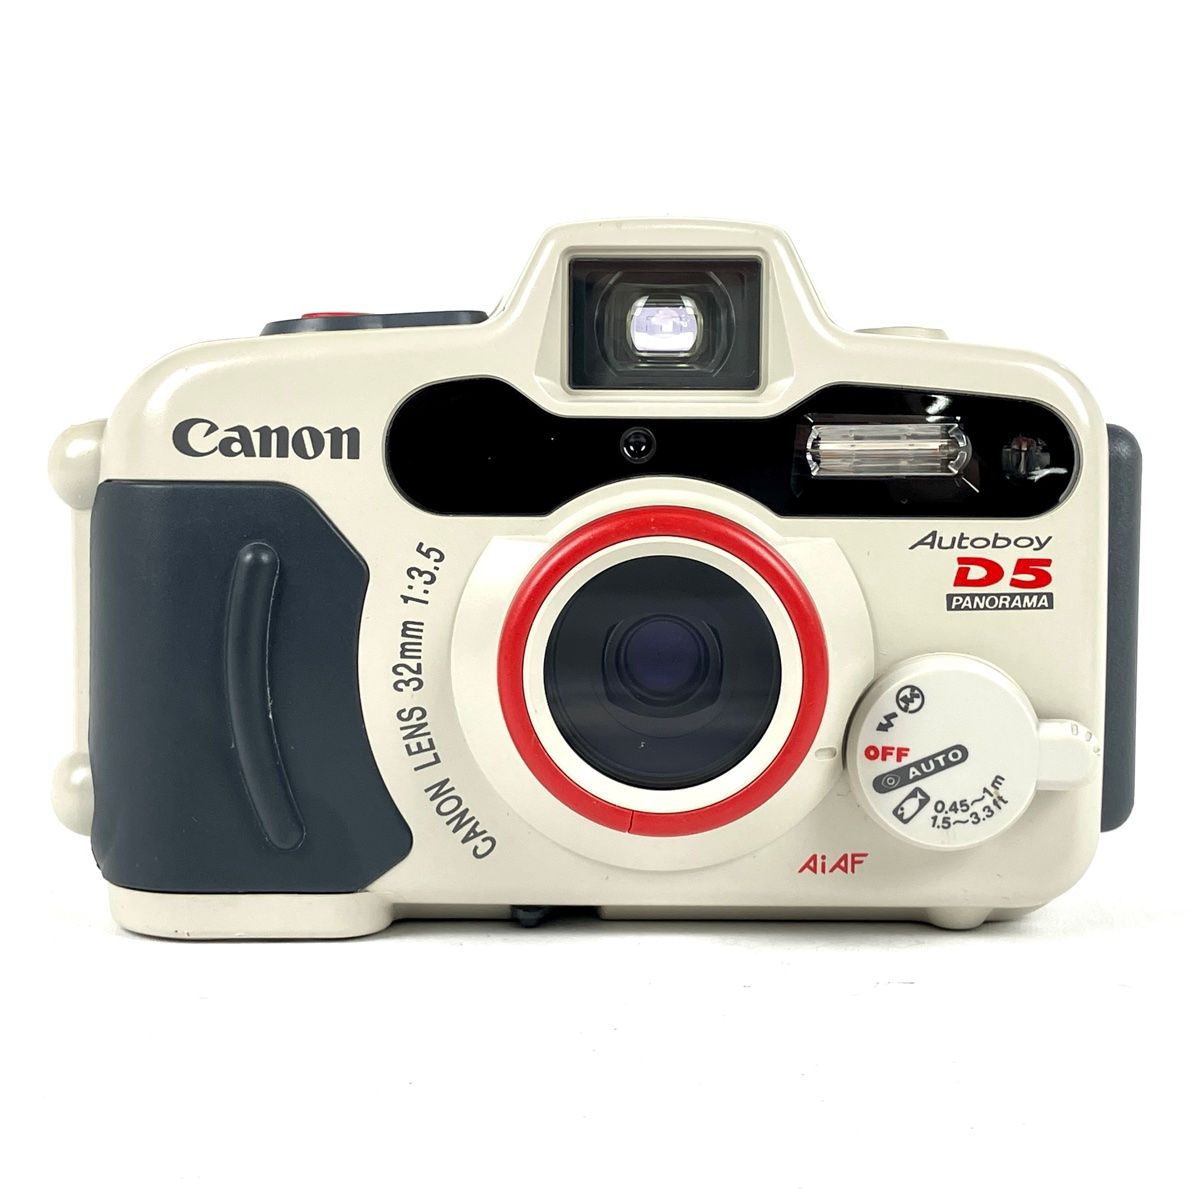 キヤノン Canon Autoboy D5 PANORAMA フィルム コンパクトカメラ